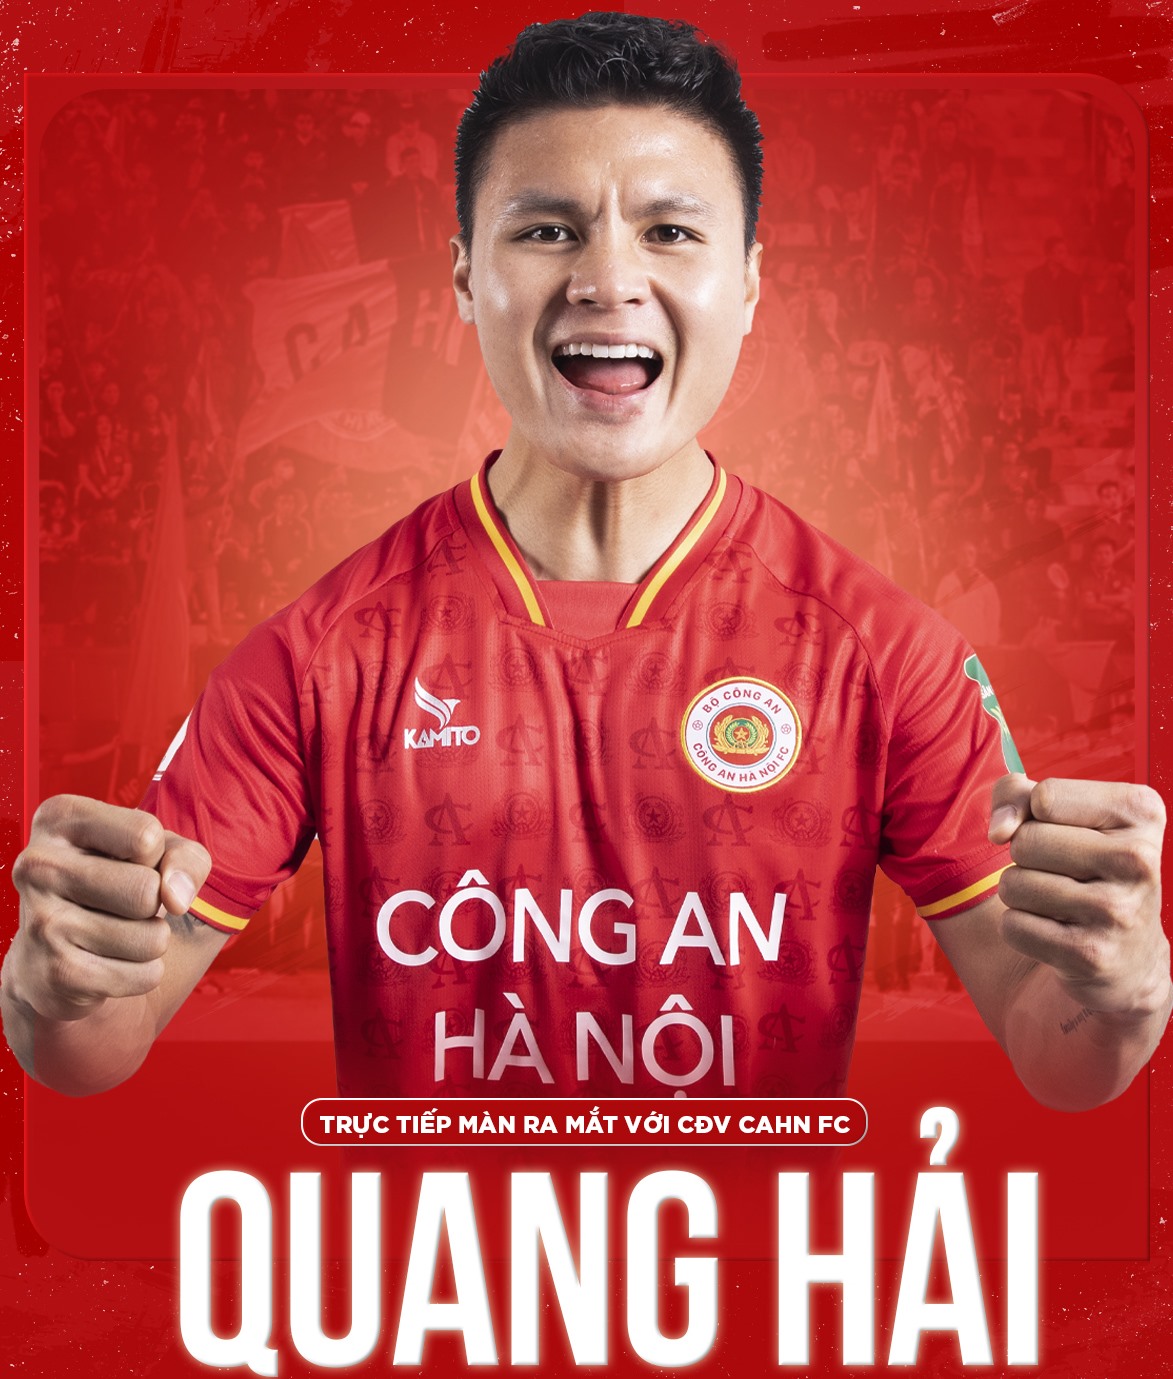 Hình ảnh Quang Hải trong màu áo câu lạc bộ Công an Hà Nội. Ảnh: CAHNFC